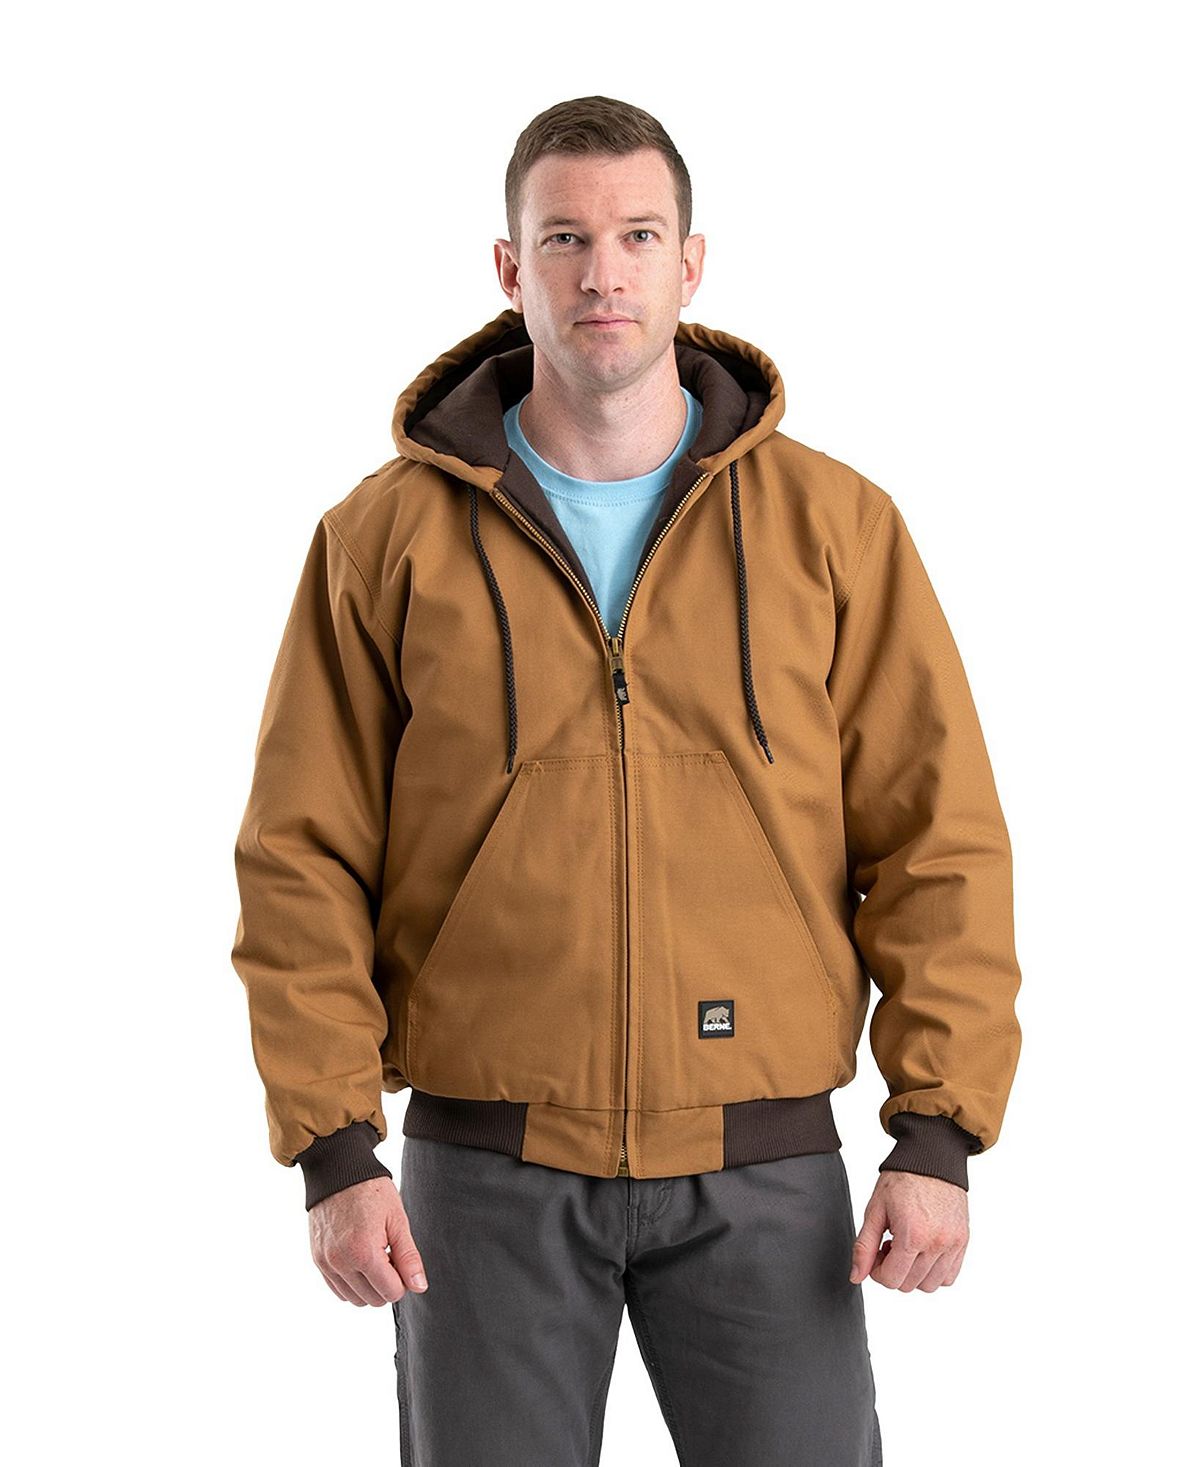 Мужская активная куртка с капюшоном Heritage Duck Hooded Berne мужское пальто heritage duck chore большое и высокое berne